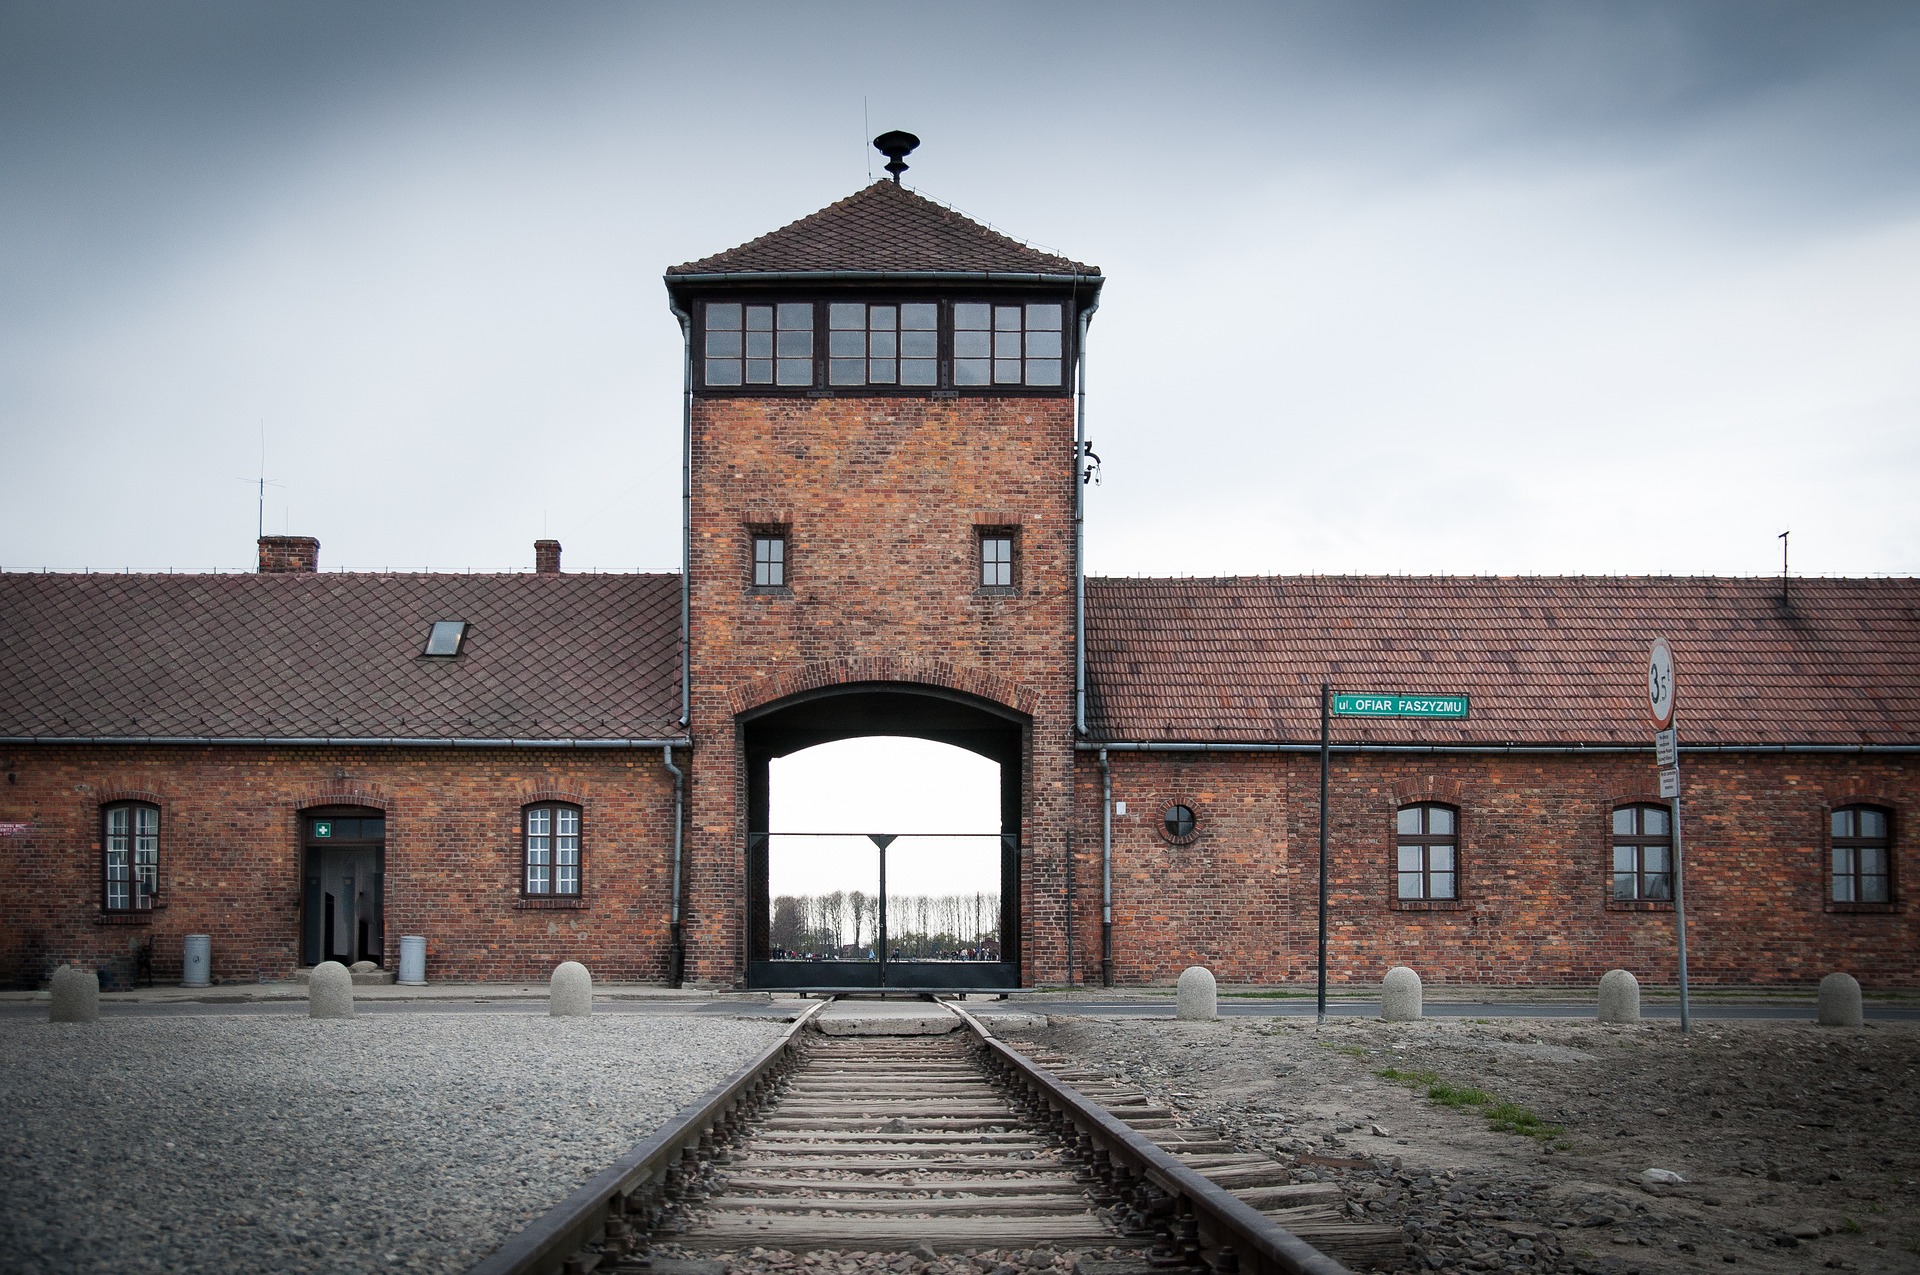 Photograph of Auschwitz